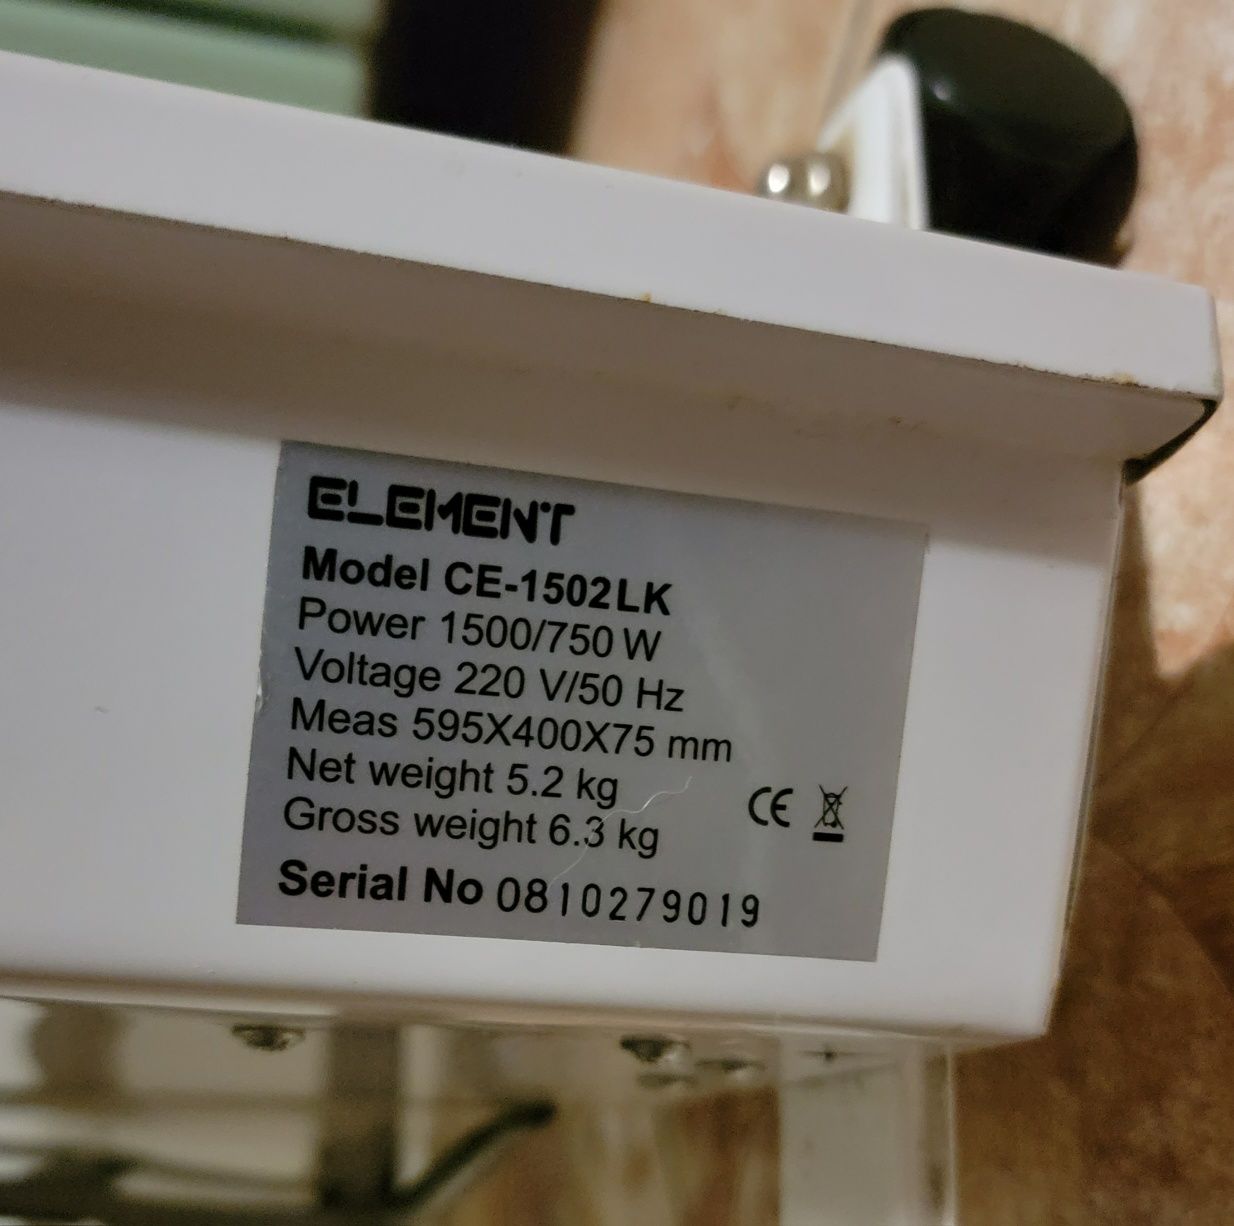 электроконвектор Обогреватель Element CE-1502LK 1500/750w